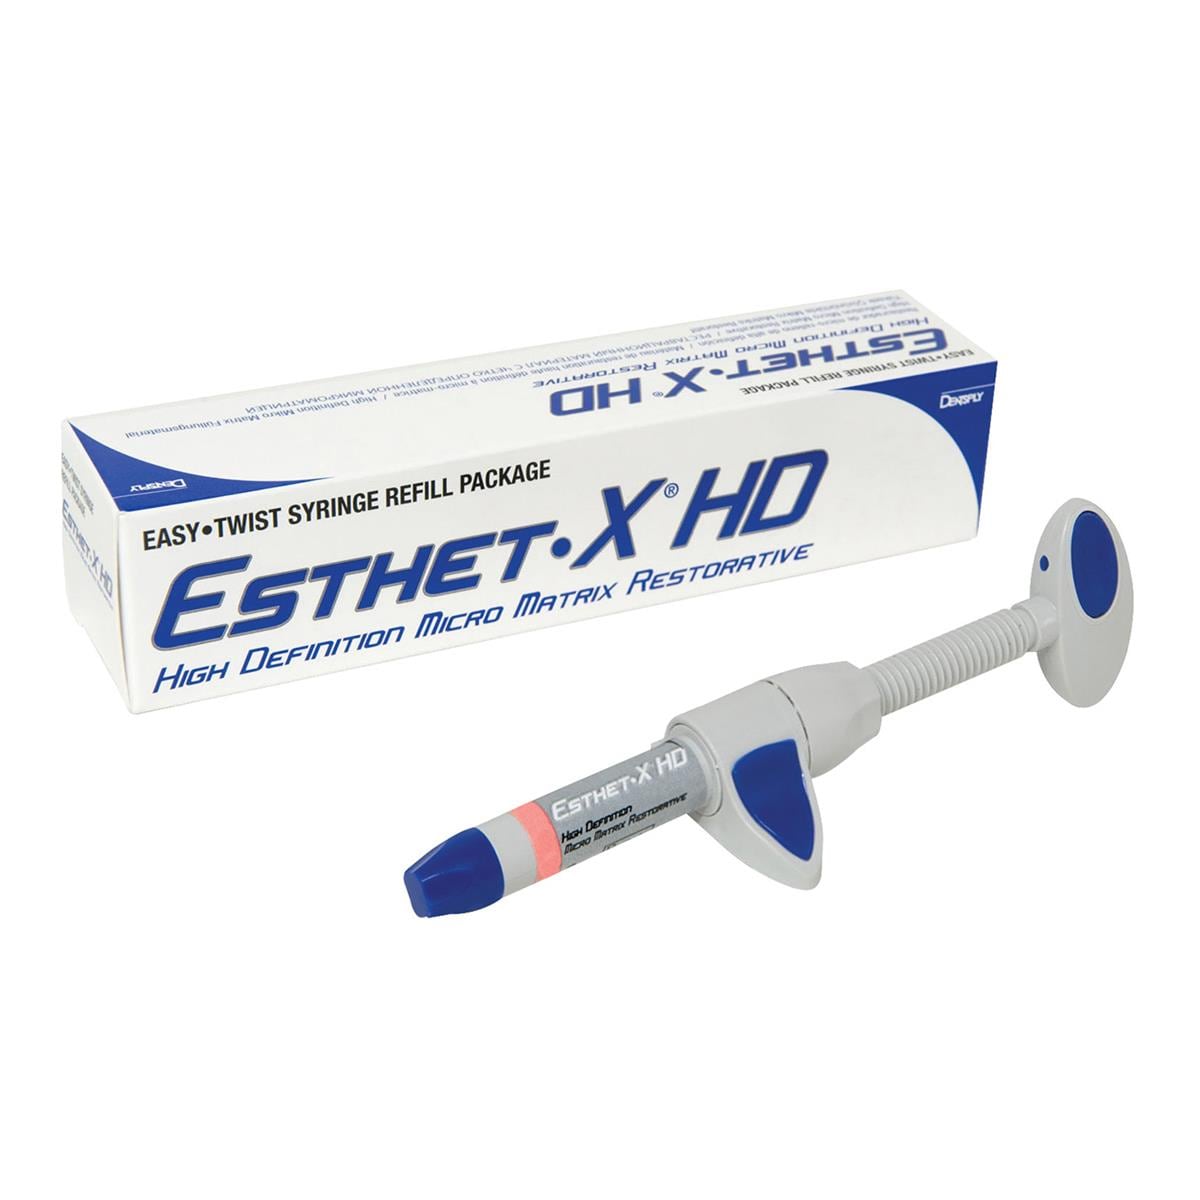 Esthet X HD Composite Syringe 3g C1